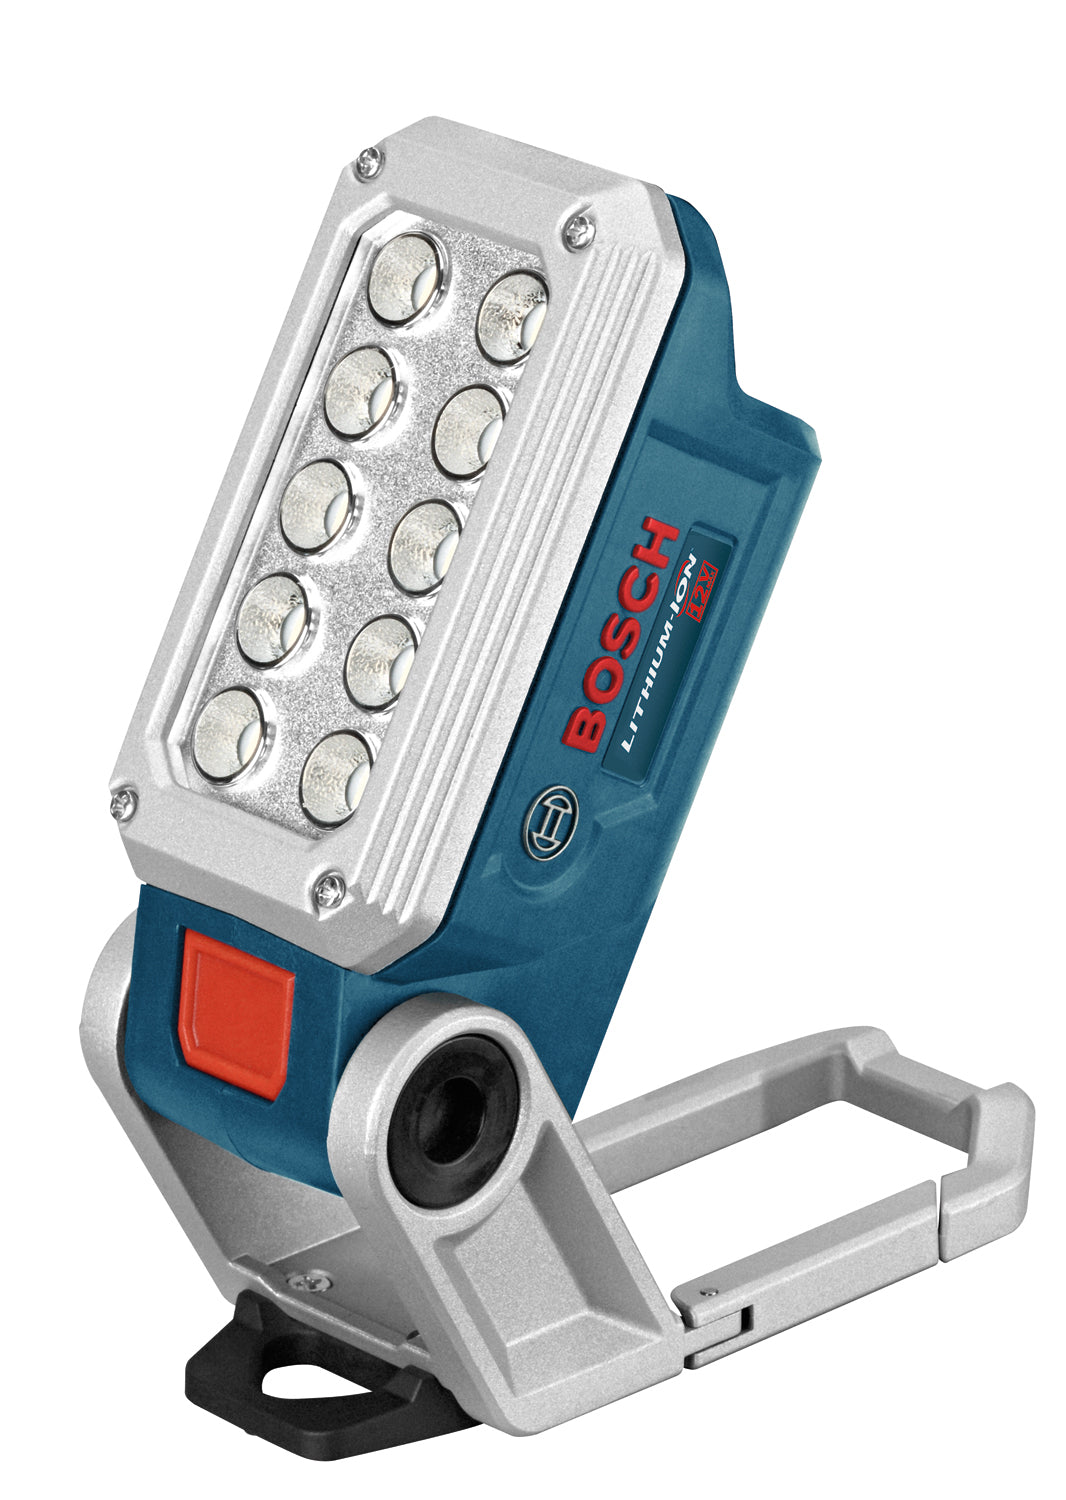 Bosch FL12 12V Max LED Worklight (Bare Tool)